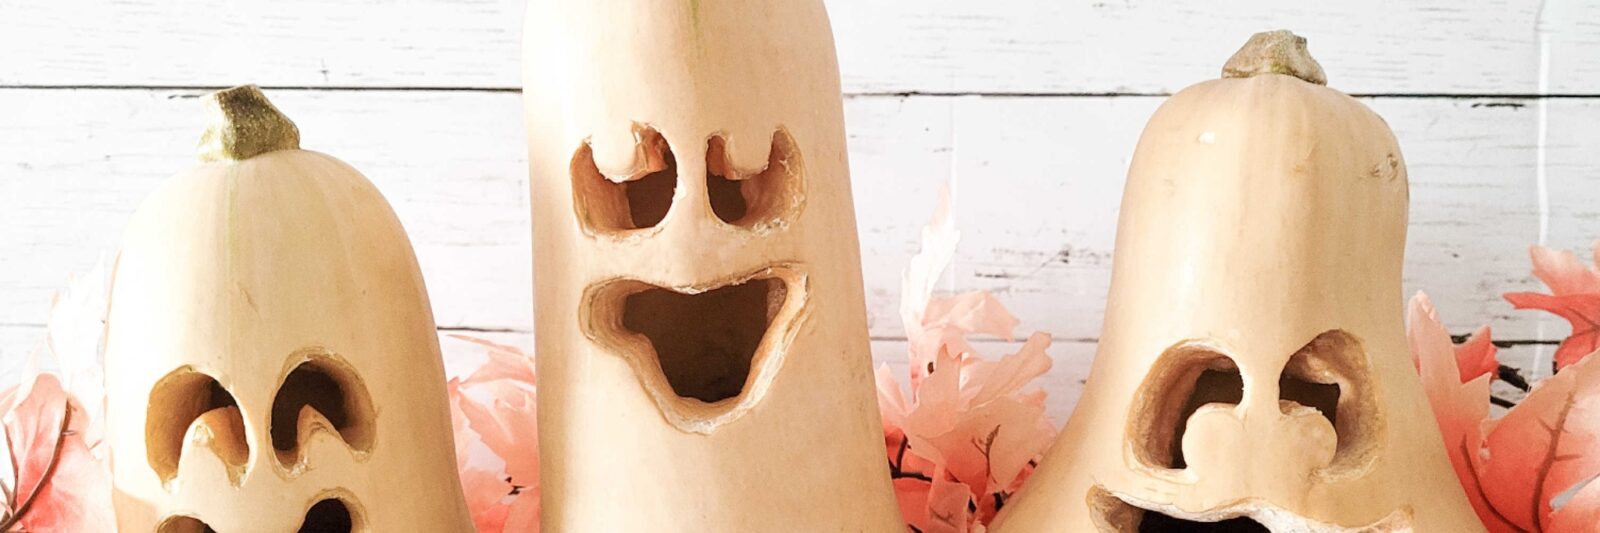 Butternut Squash Halloween Pumpkin Carving Ideas